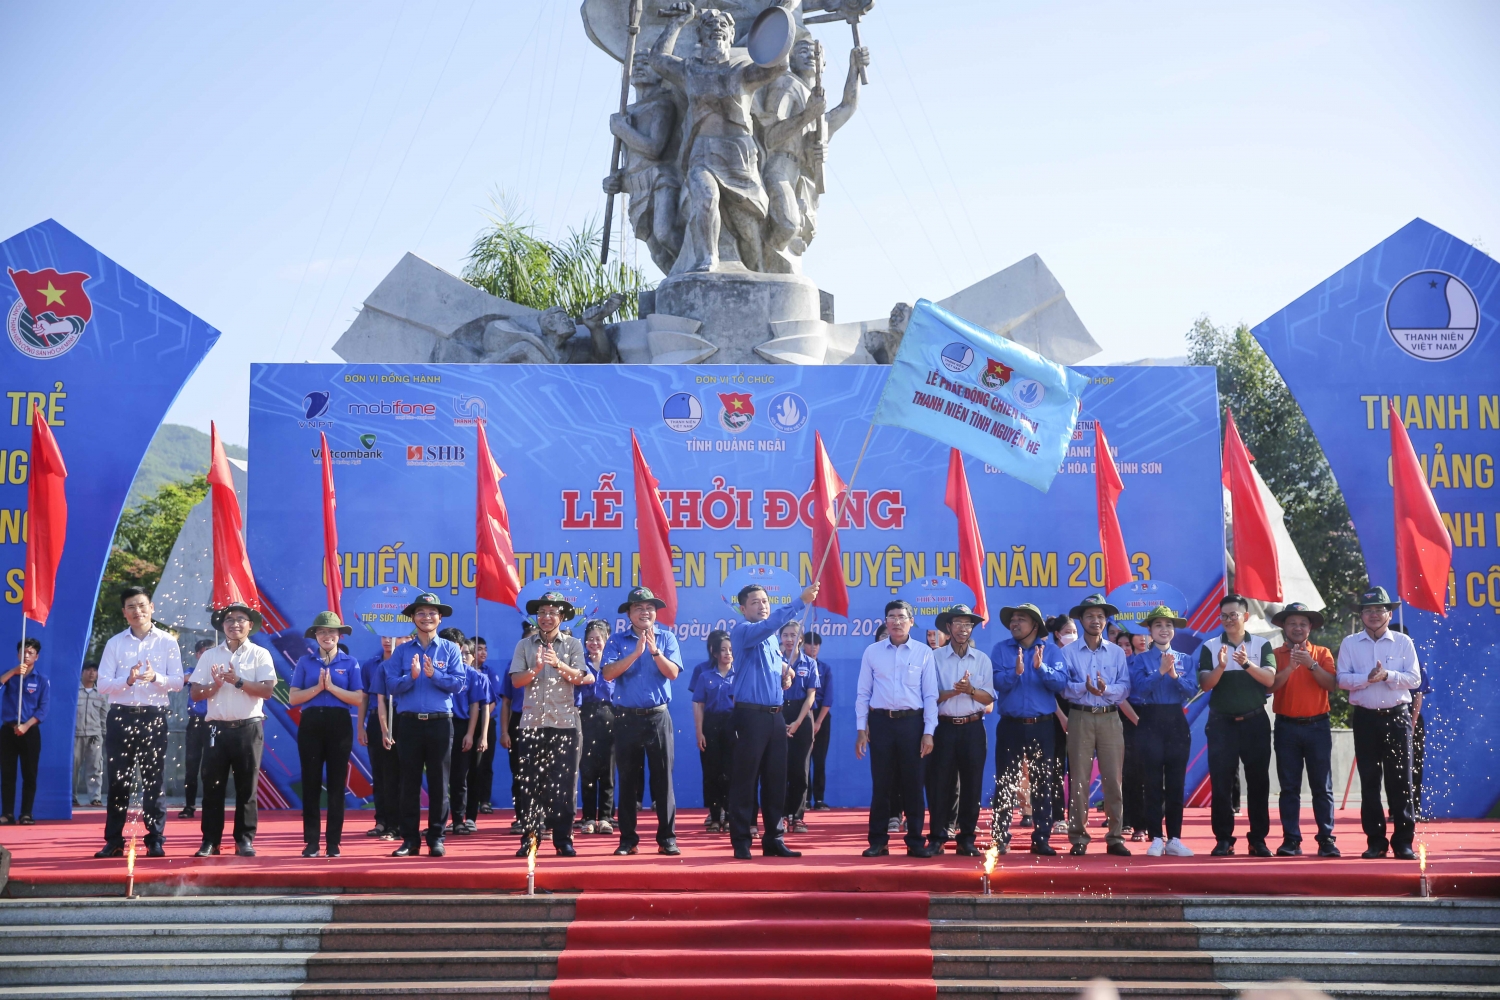 Tuổi trẻ BSR xung kích trong chiến dịch Thanh niên tình nguyện hè năm 2023 của tỉnh Quảng Ngãi